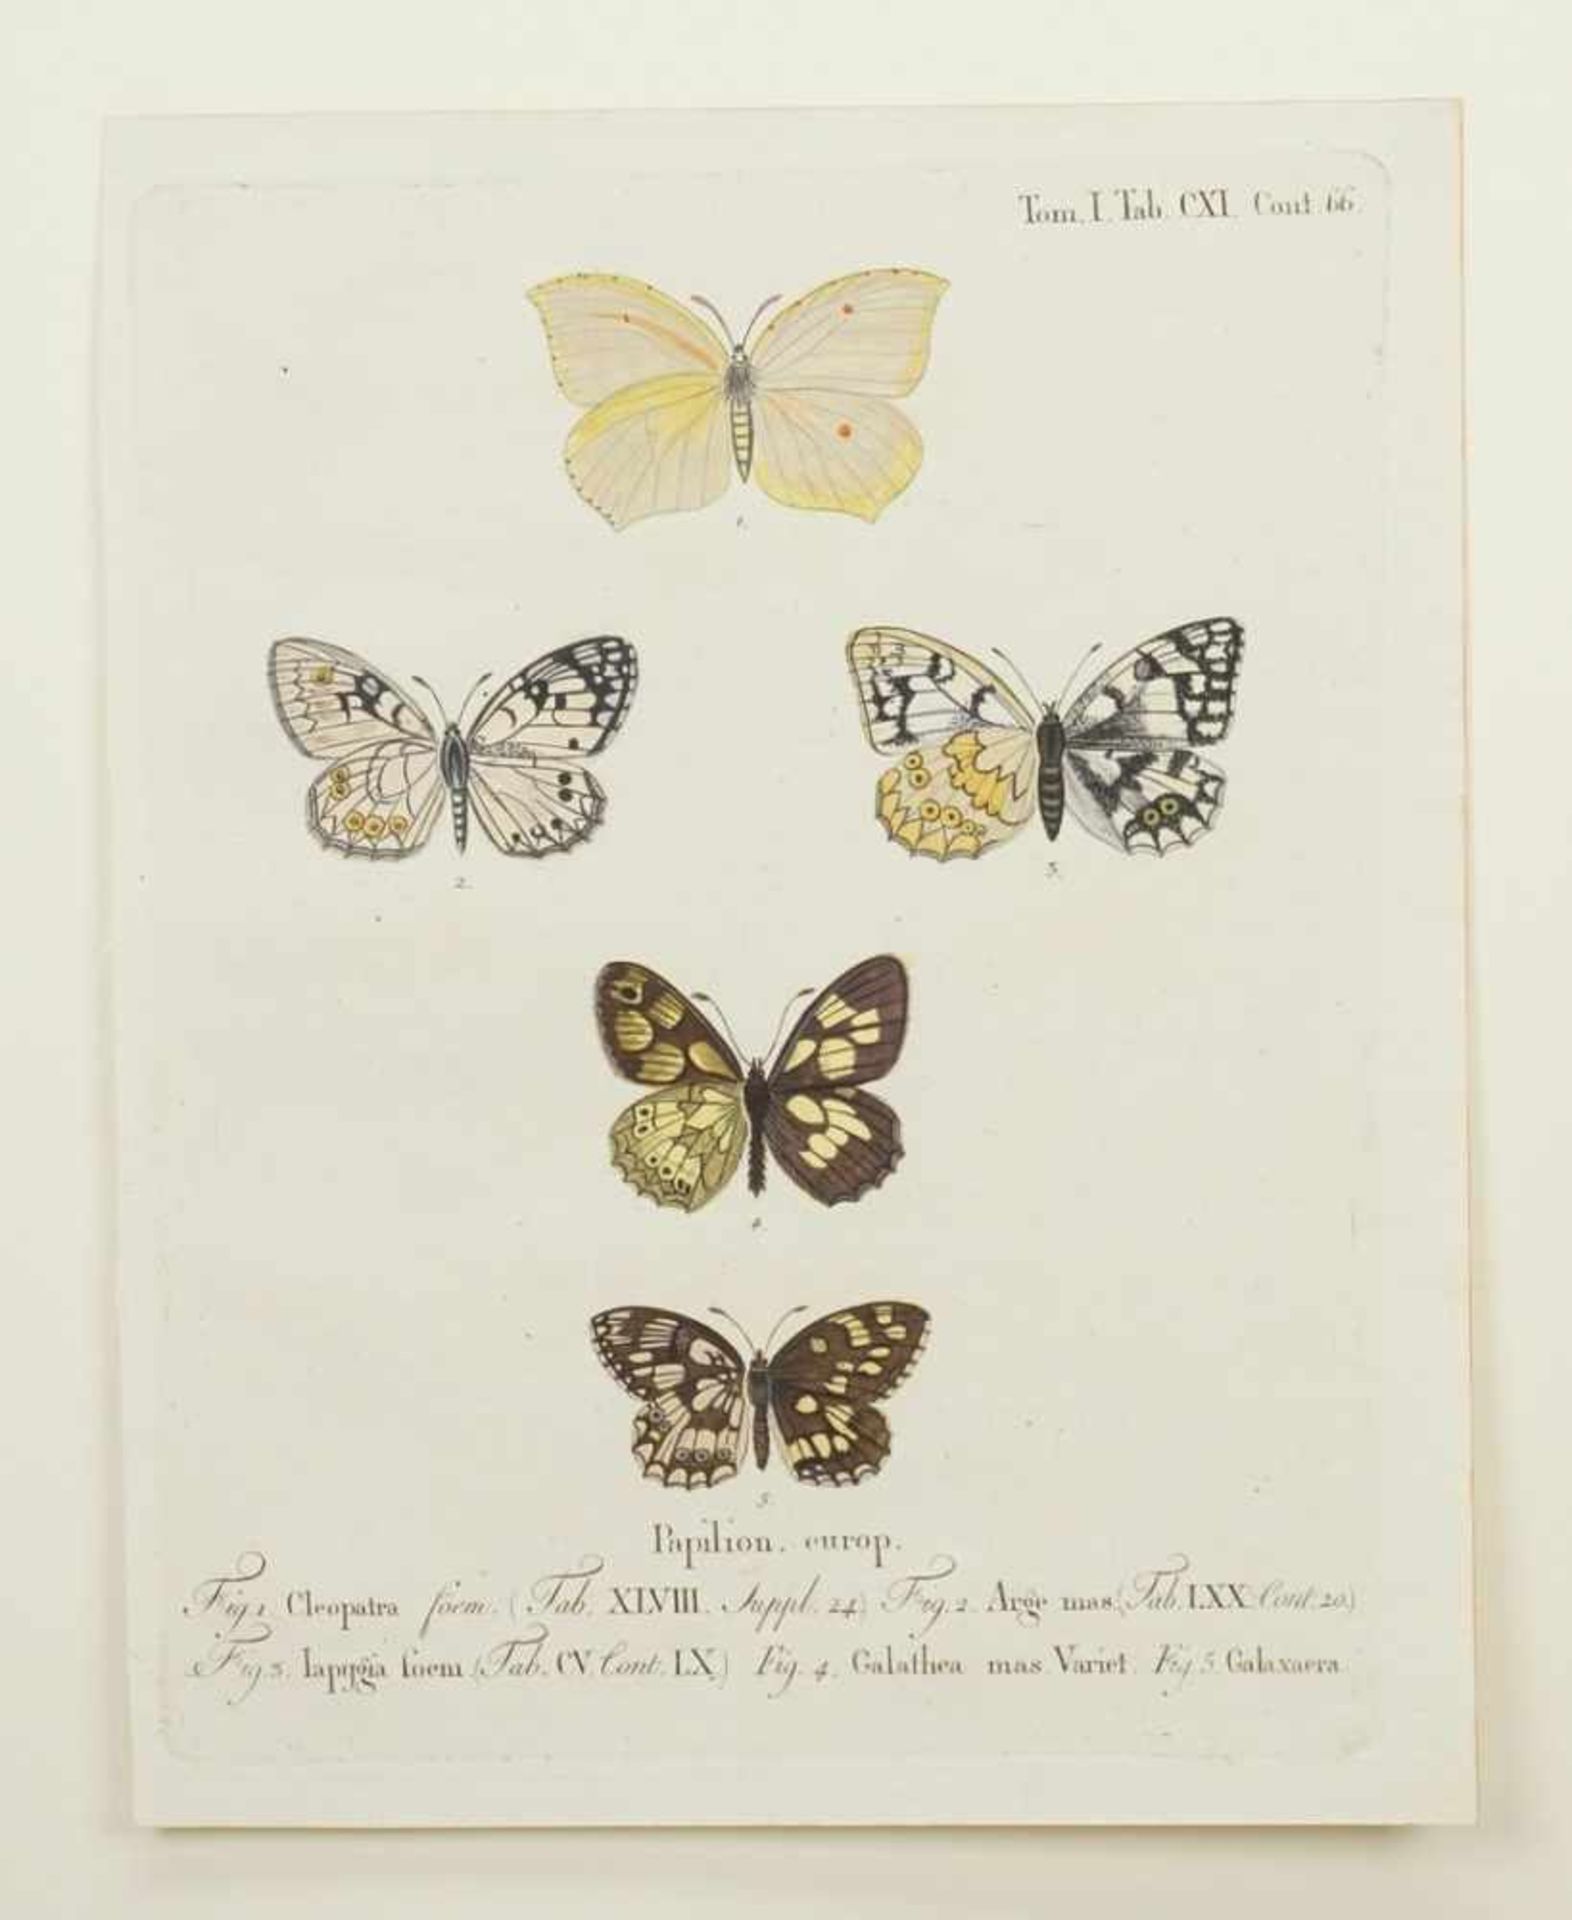 Naturkundliches Blatt, "Papilion. europ. (Europäische Schmetterlinge)" - Bild 3 aus 3